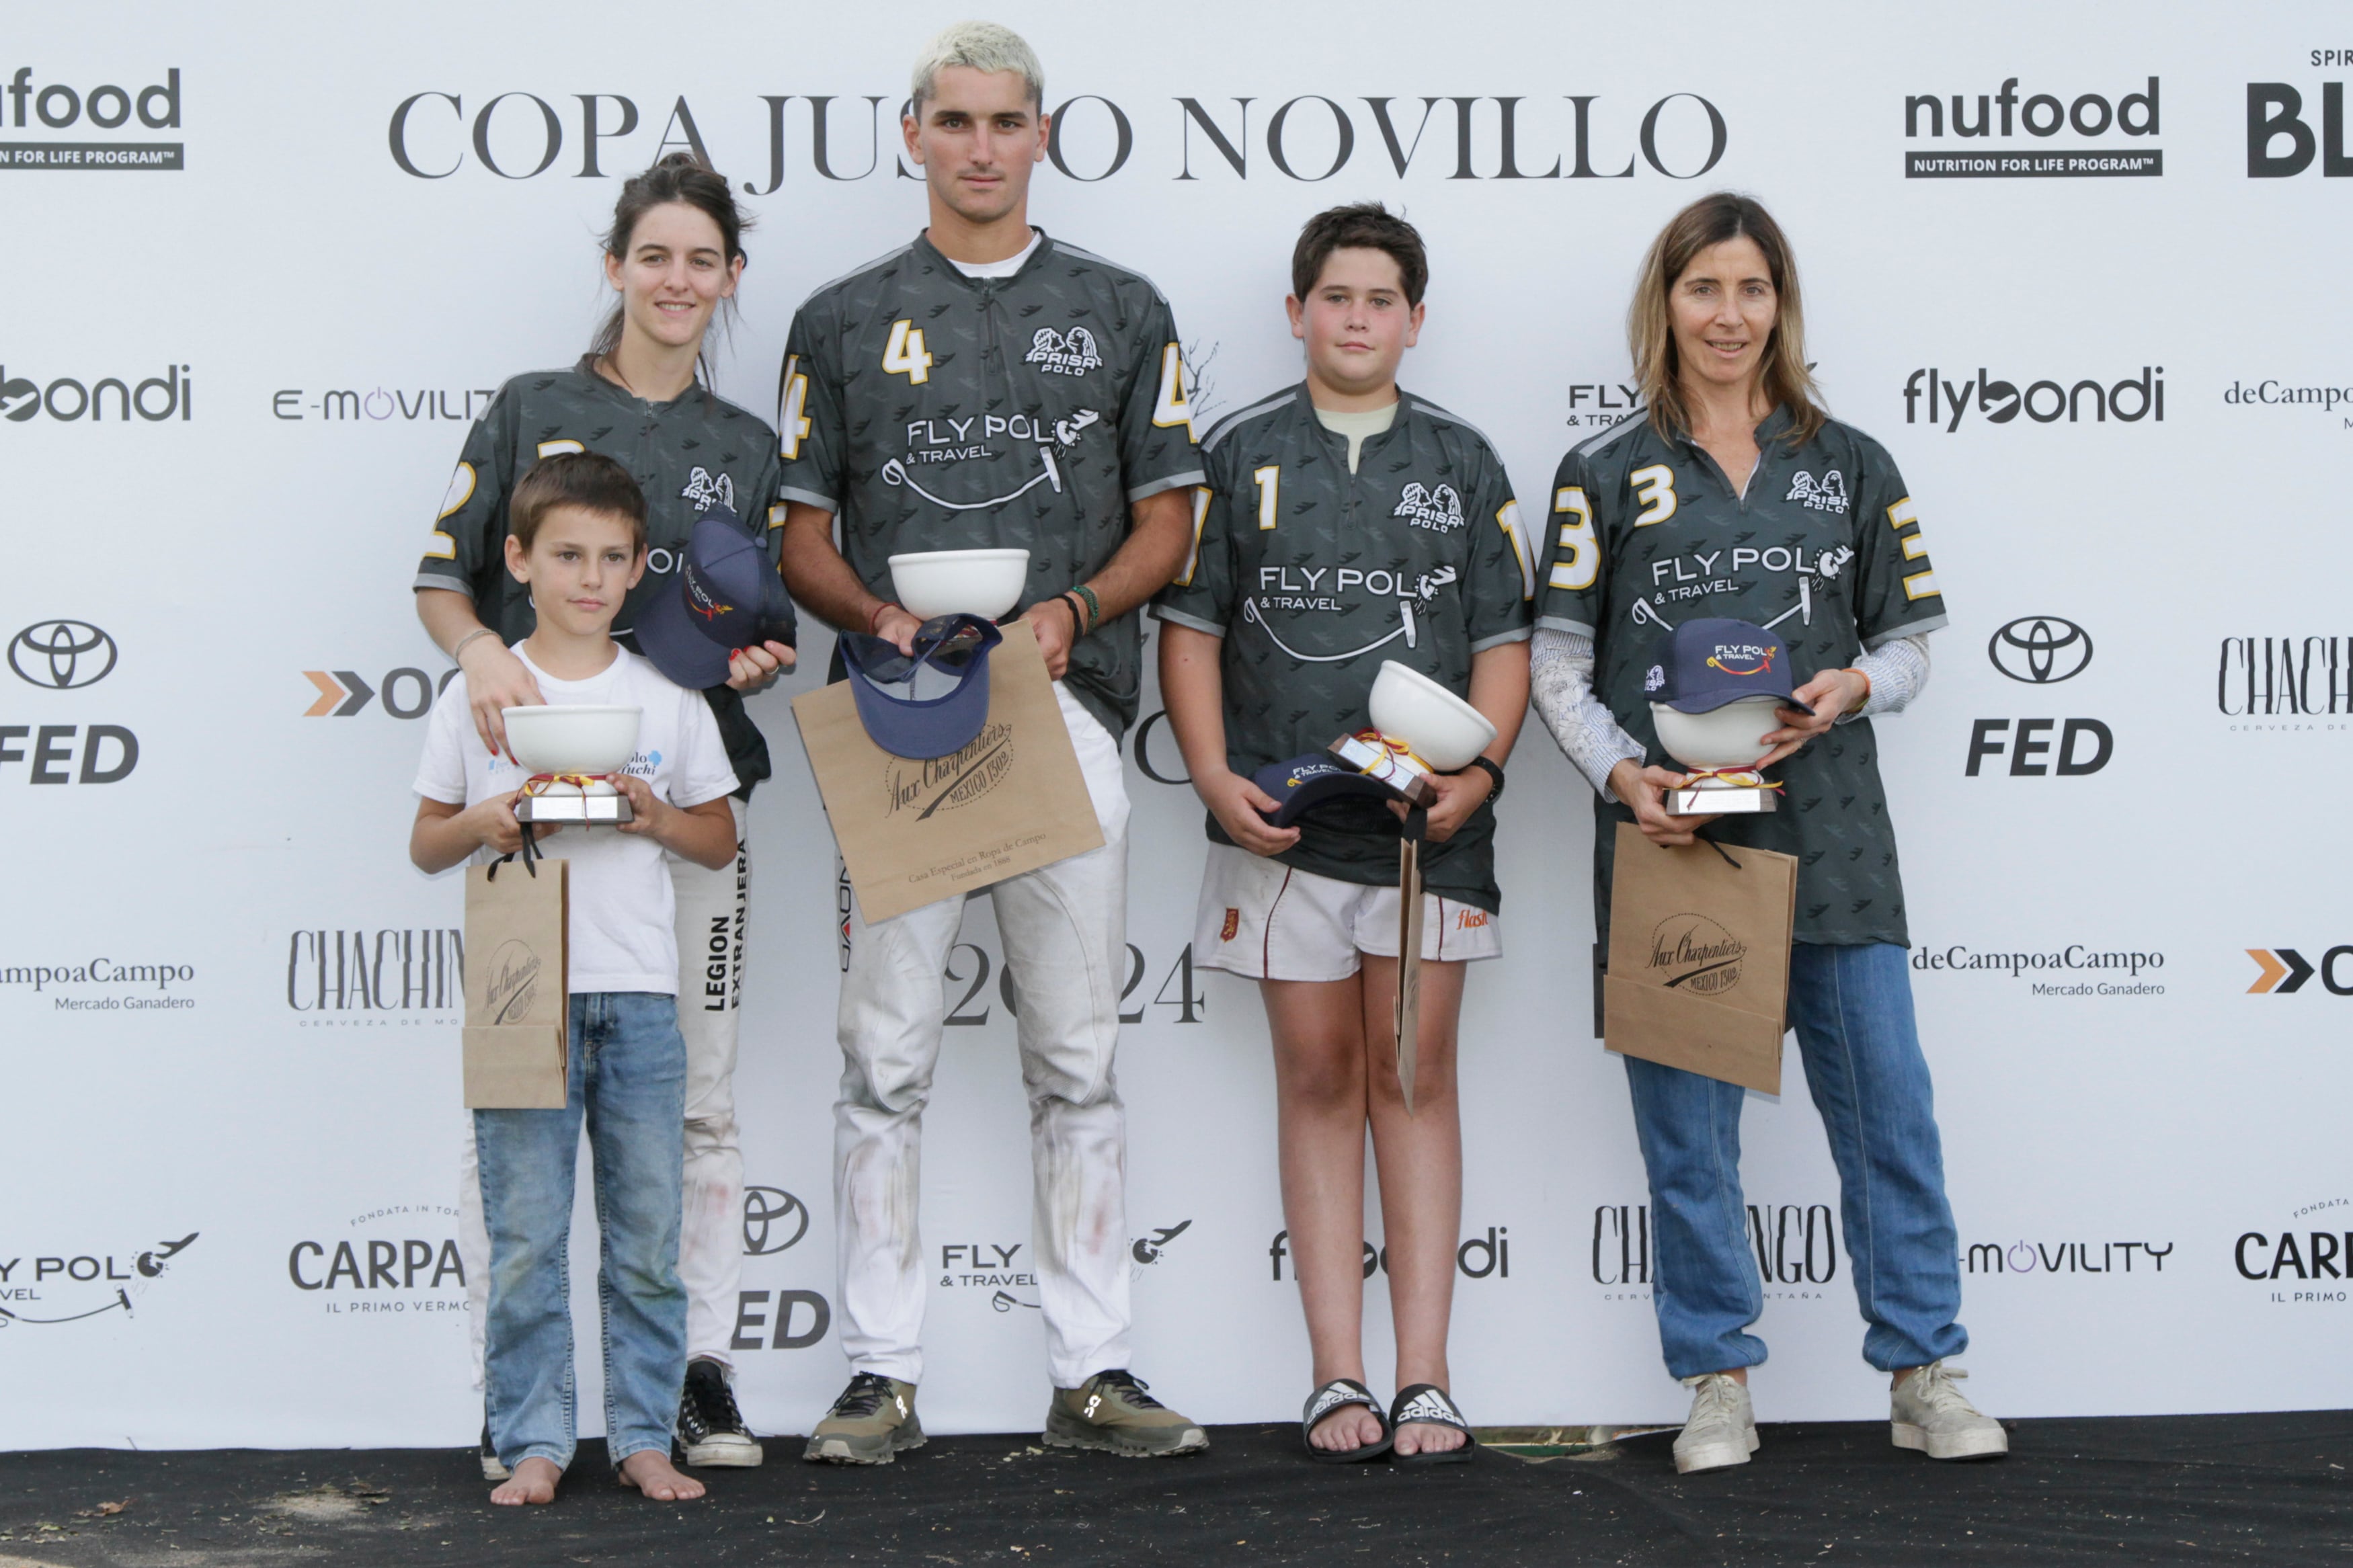 Azucena Uranga, Santiago Llavallol, Vicente Ferrari y Leri Laprida en el podio. Se llevaron la copa Javier Novillo Astrada.

